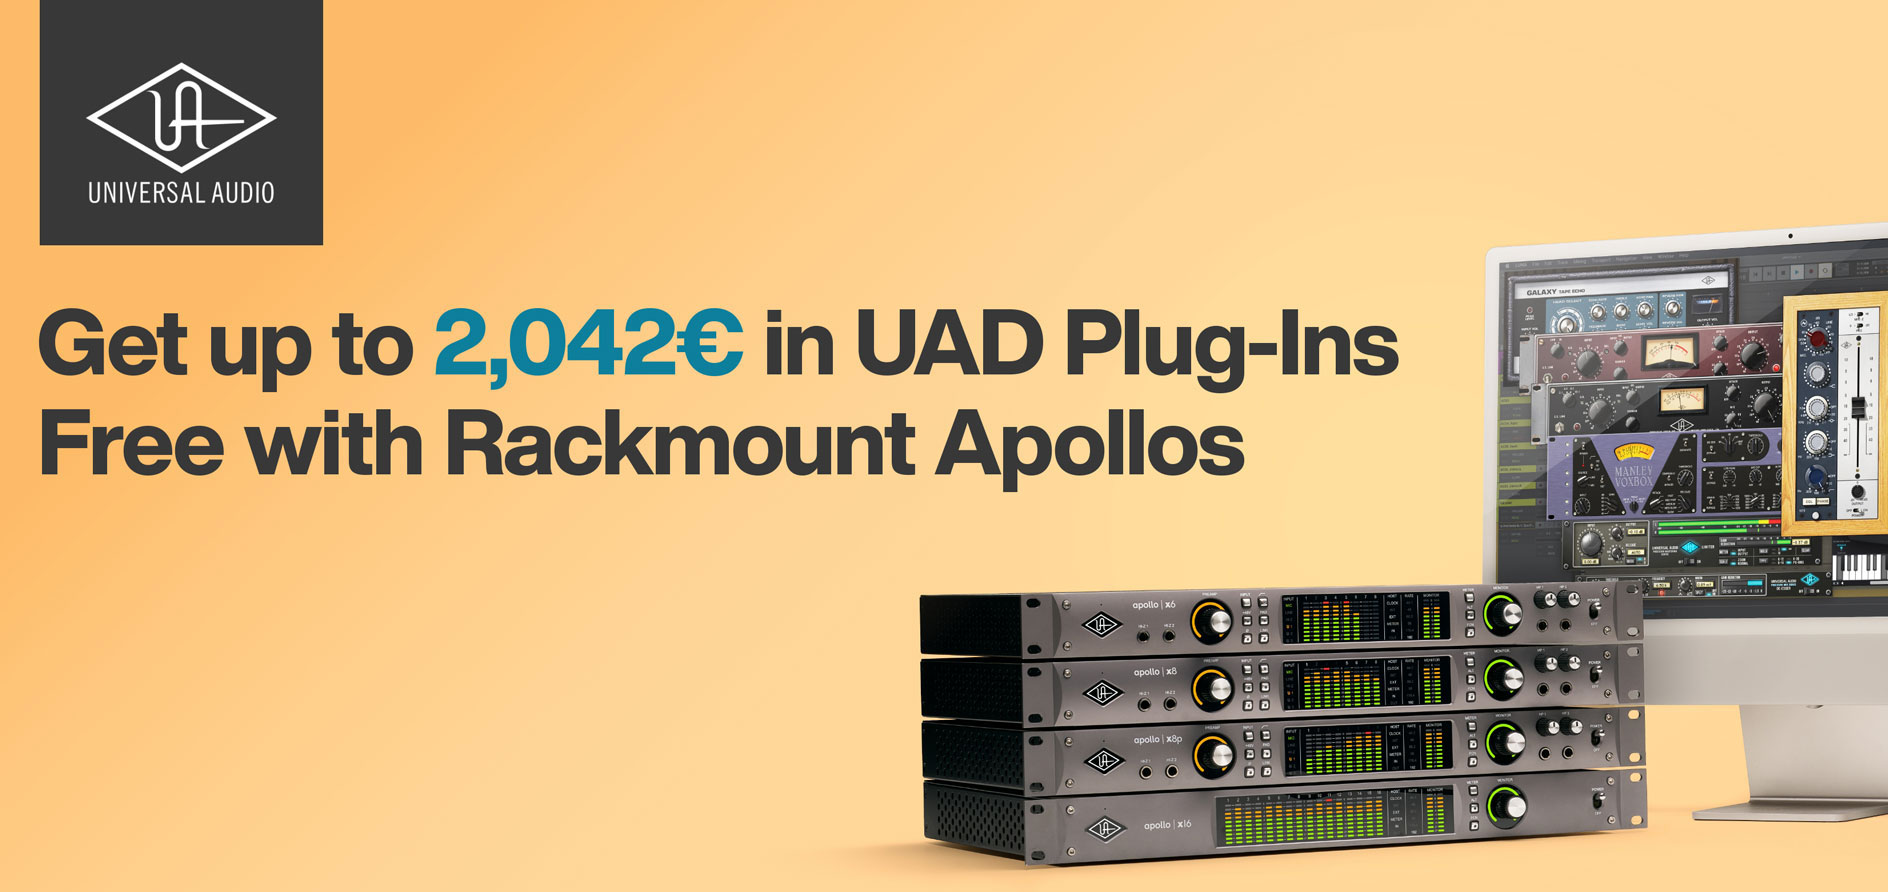 plug-ins UAD gratis, por valor de hasta 2.042€, con la compra de cualquier Apollo Rack